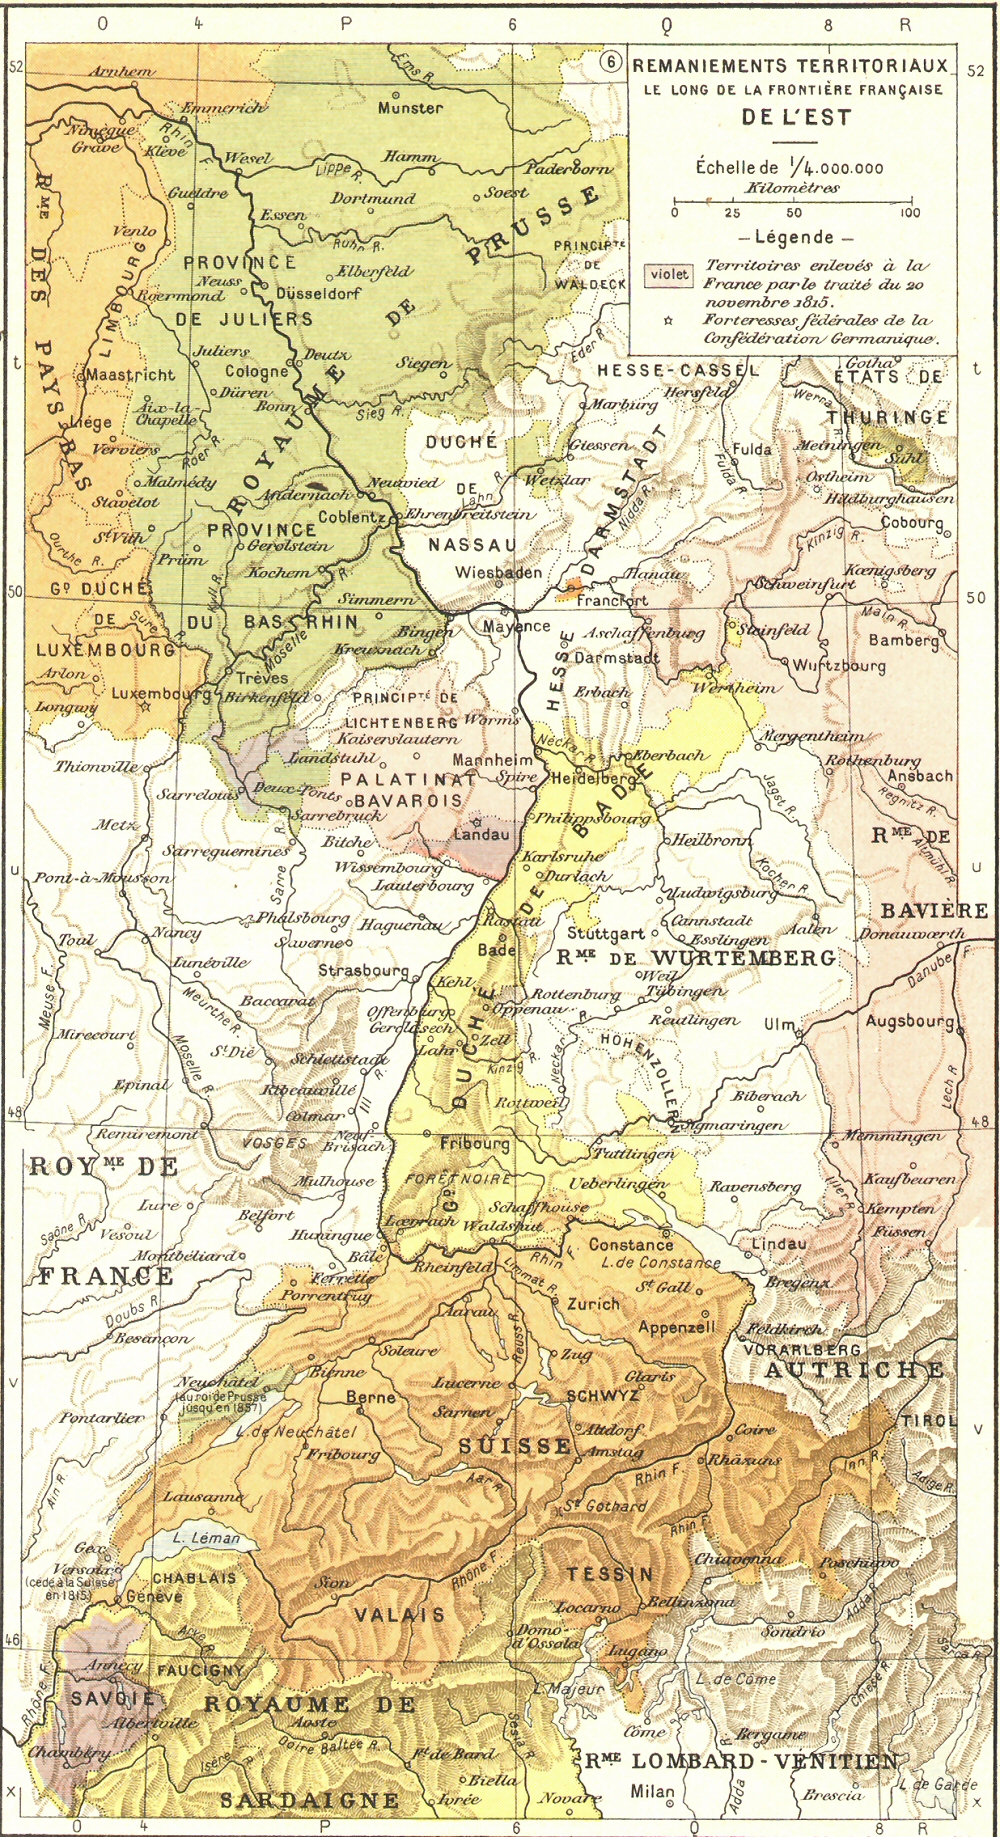 Carte des remaniements territoriaux le long de la frontire franaise de l'Est (1815).